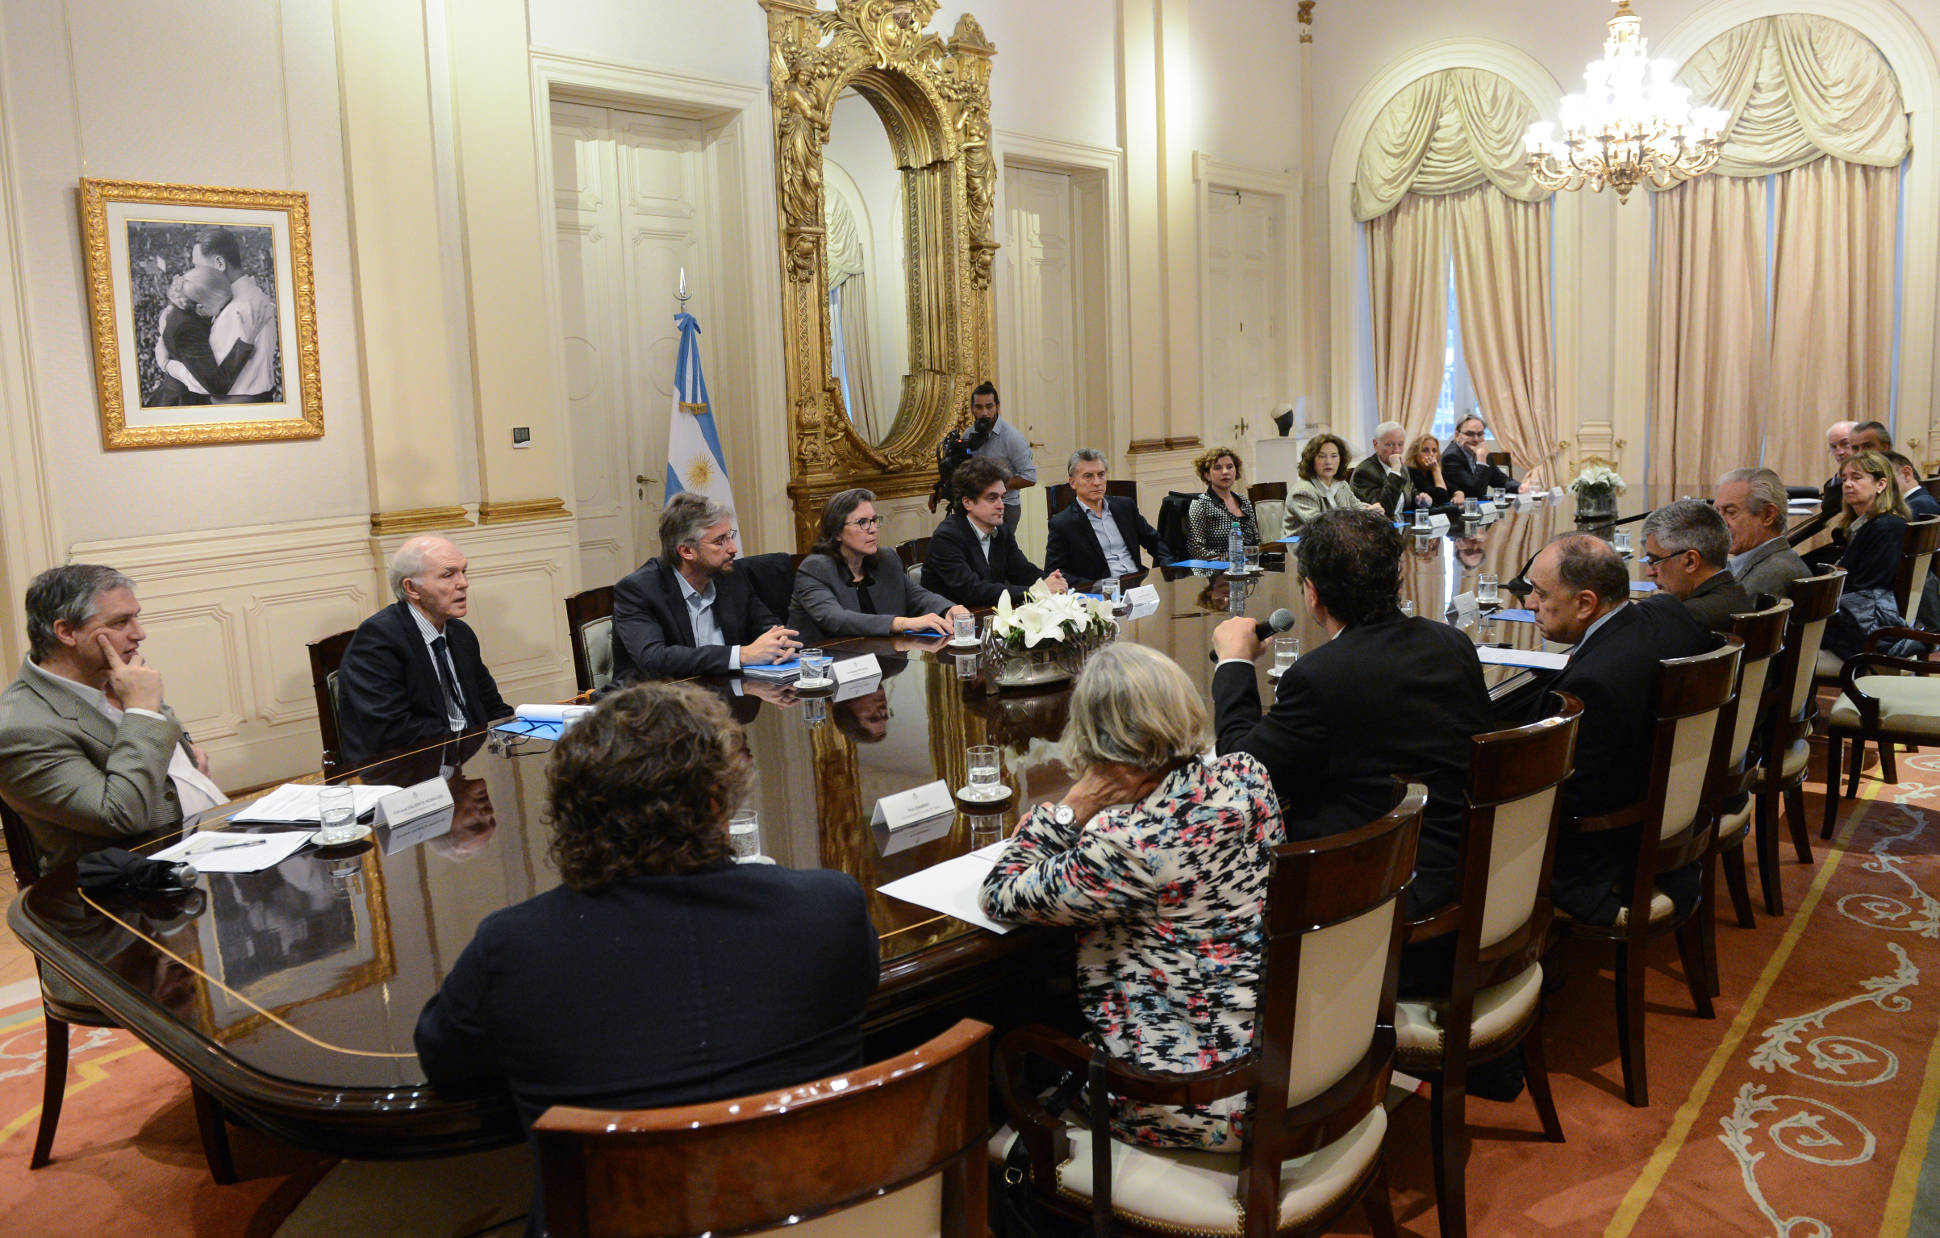 El Presidente encabezó una reunión del Consejo Presidencial Argentina 2030